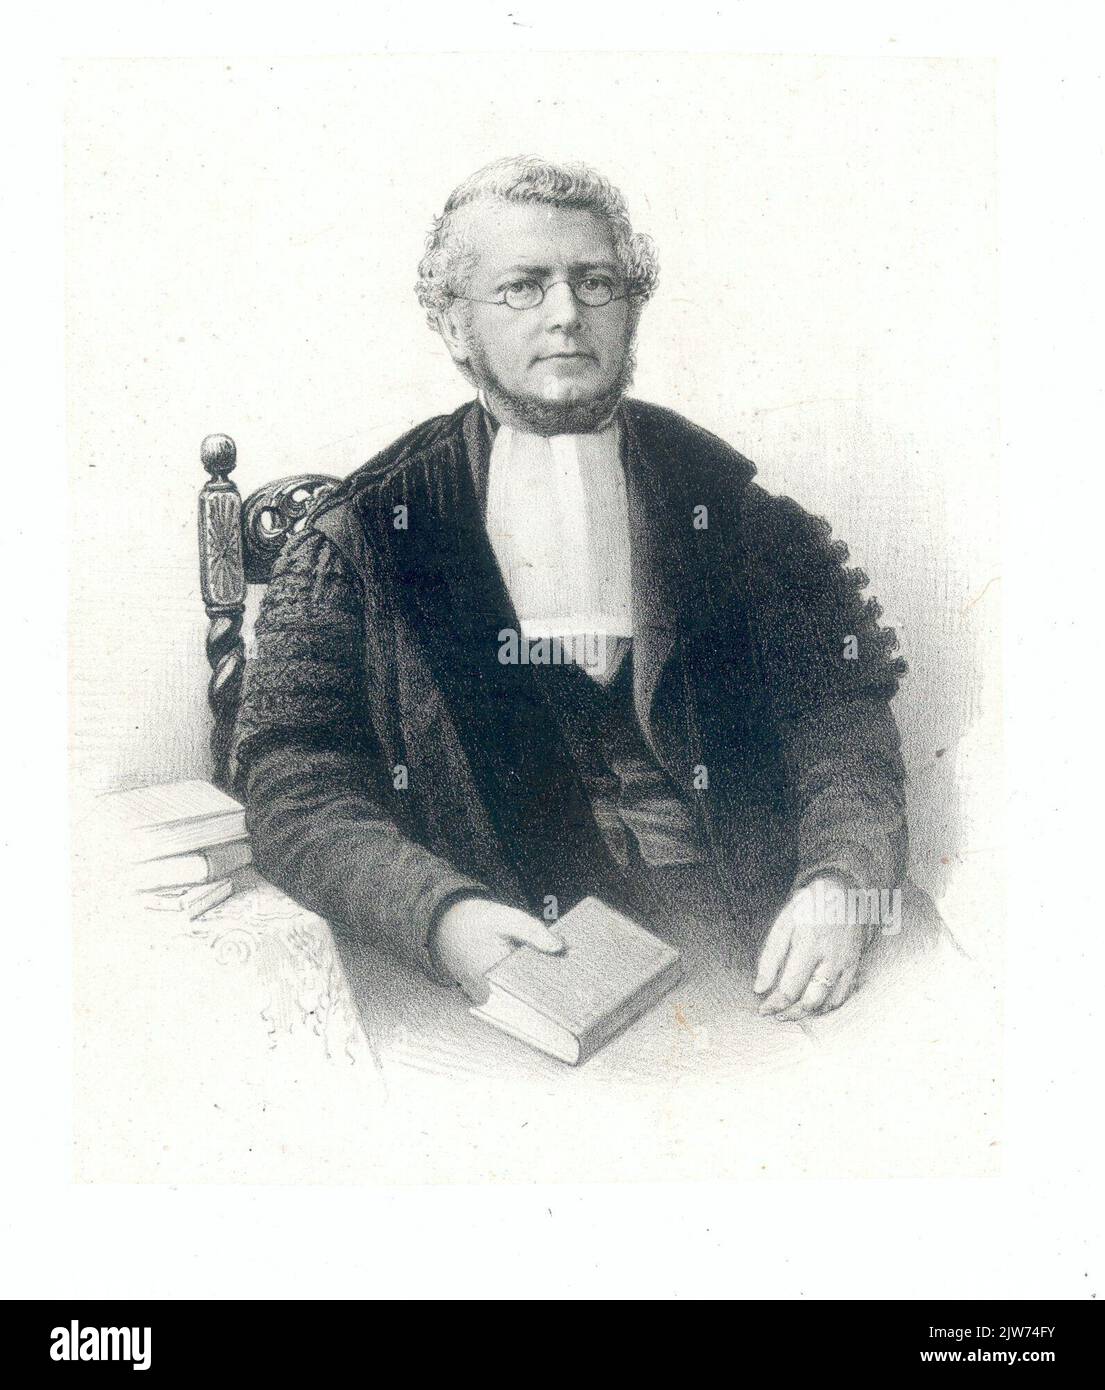 Portrait de P. Harting, né en 1812, professeur de mathématiques et de physique à l'Université des sciences appliquées d'Utrecht (1843-1882), mort en 1885. À droite, à moitié éclairée, assis, à Toga. Banque D'Images